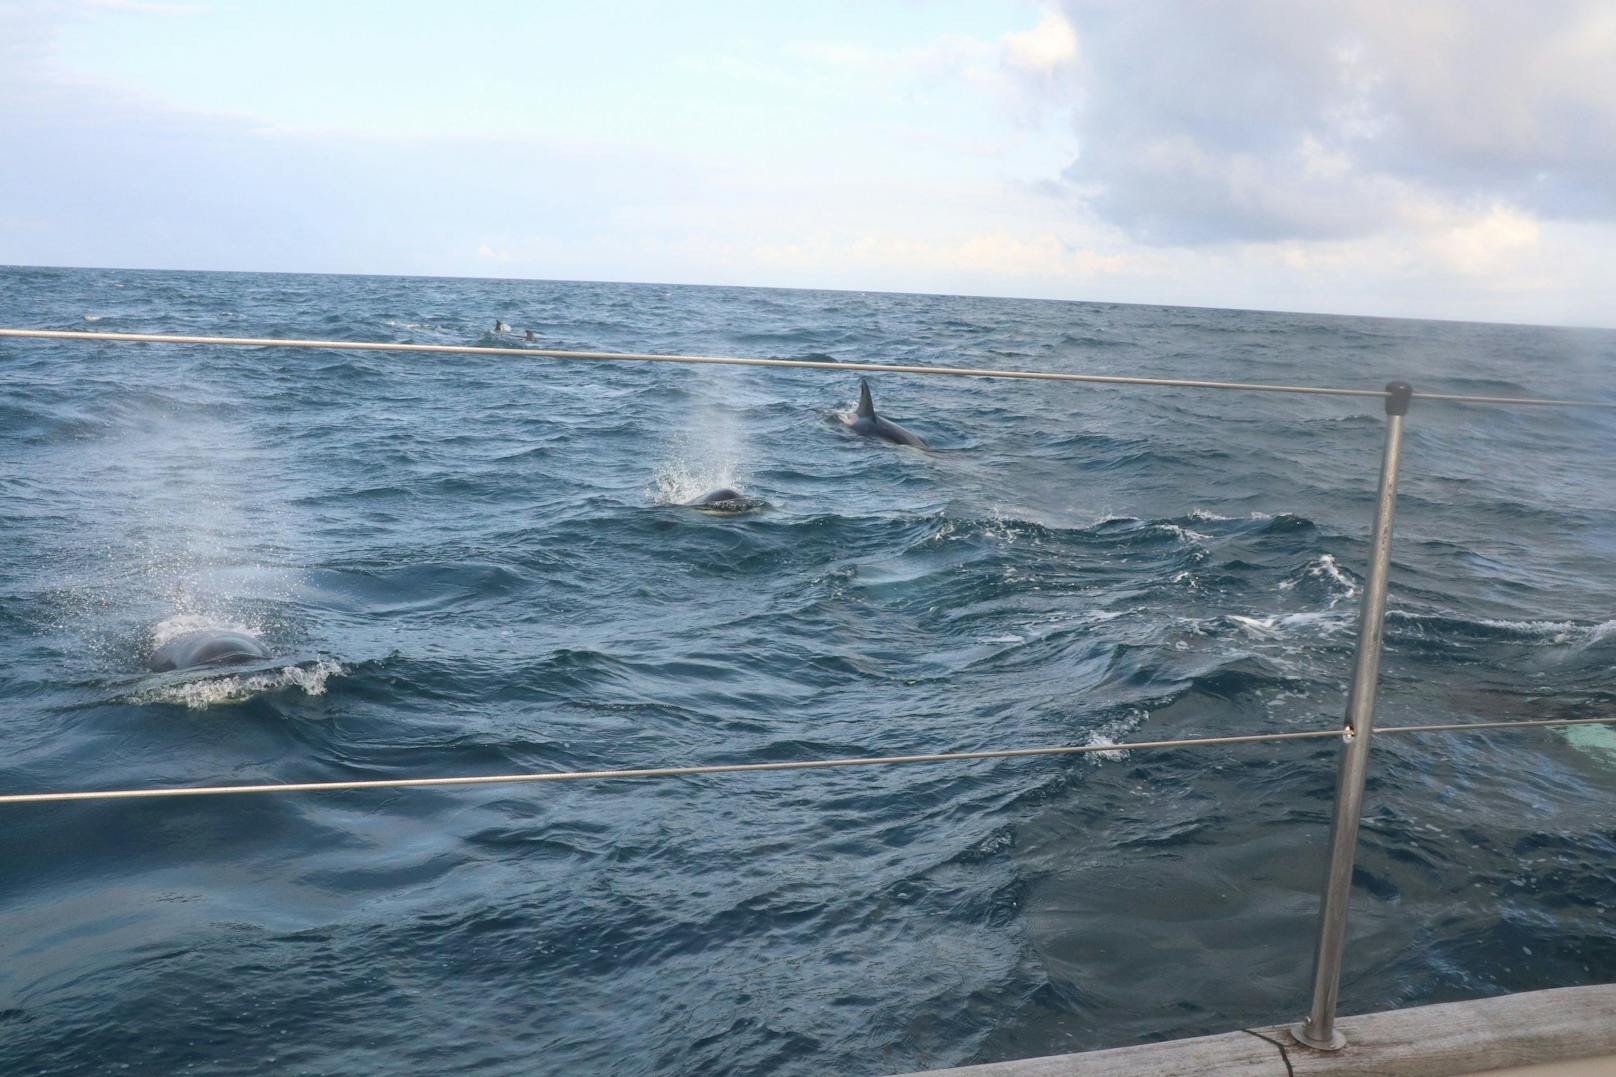 Immer wieder rammten die fünf Tonnen schweren Orcas das Boot. <br>